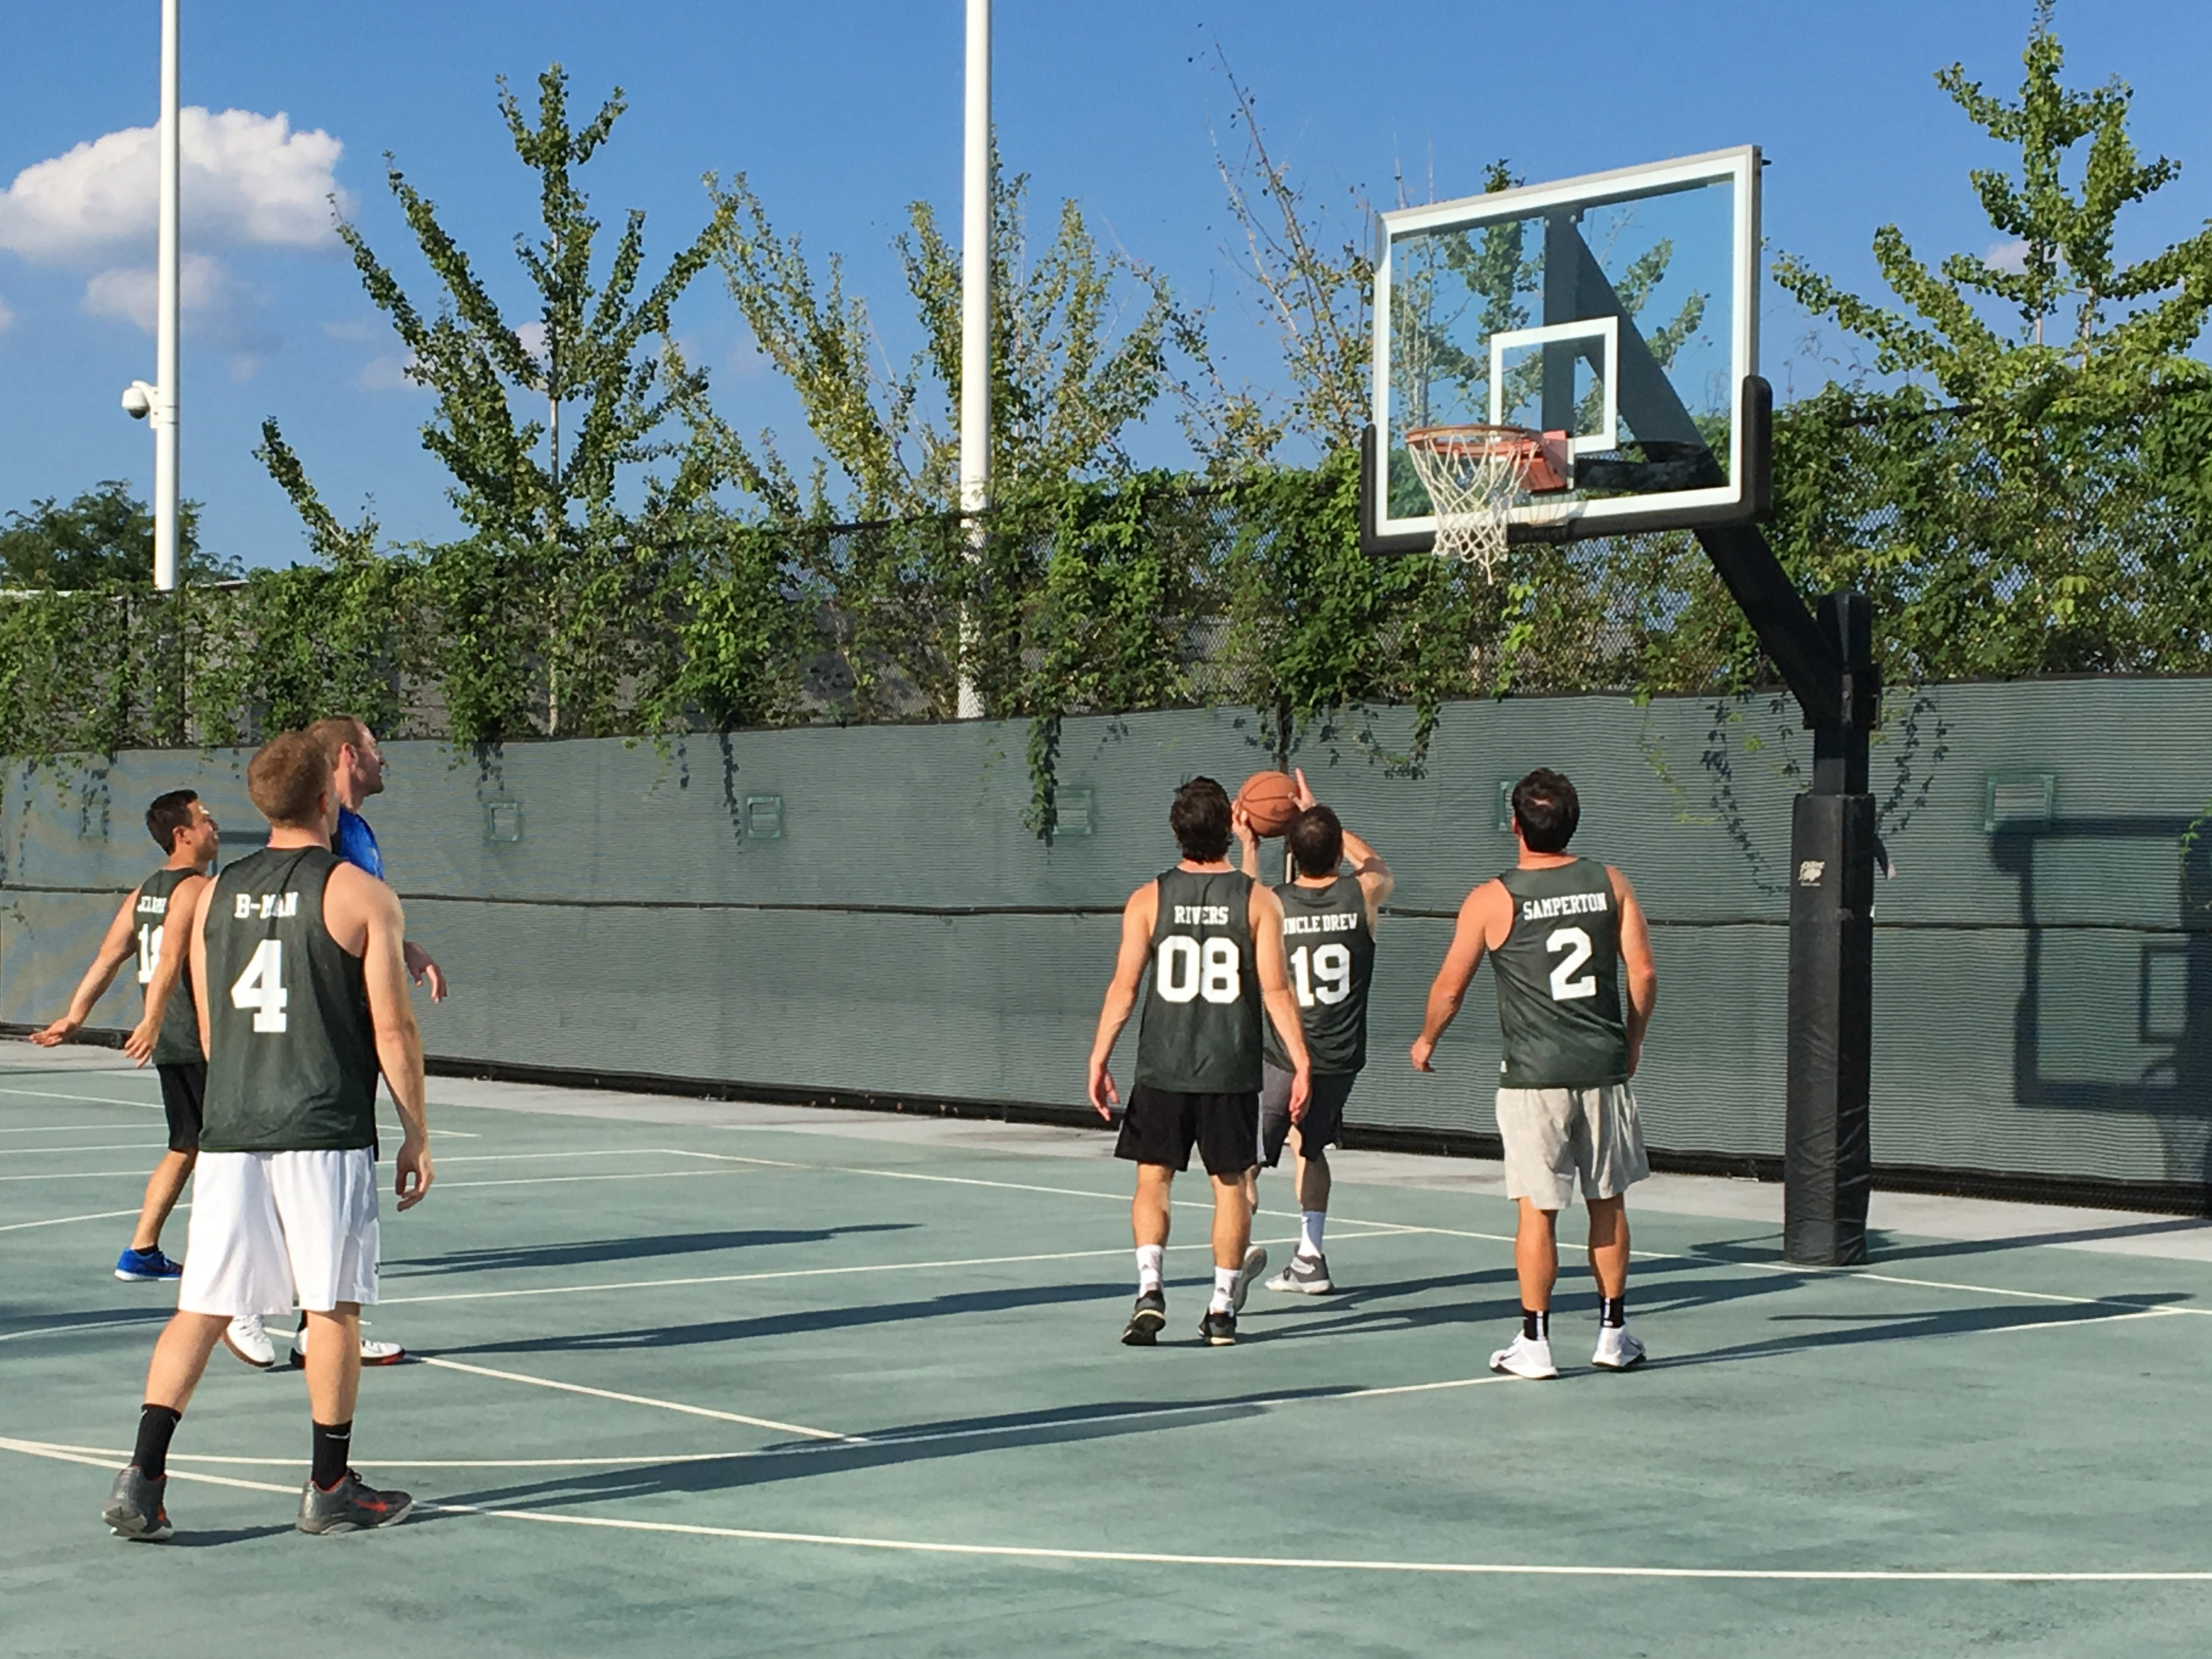 5on5 Basketball Tournament